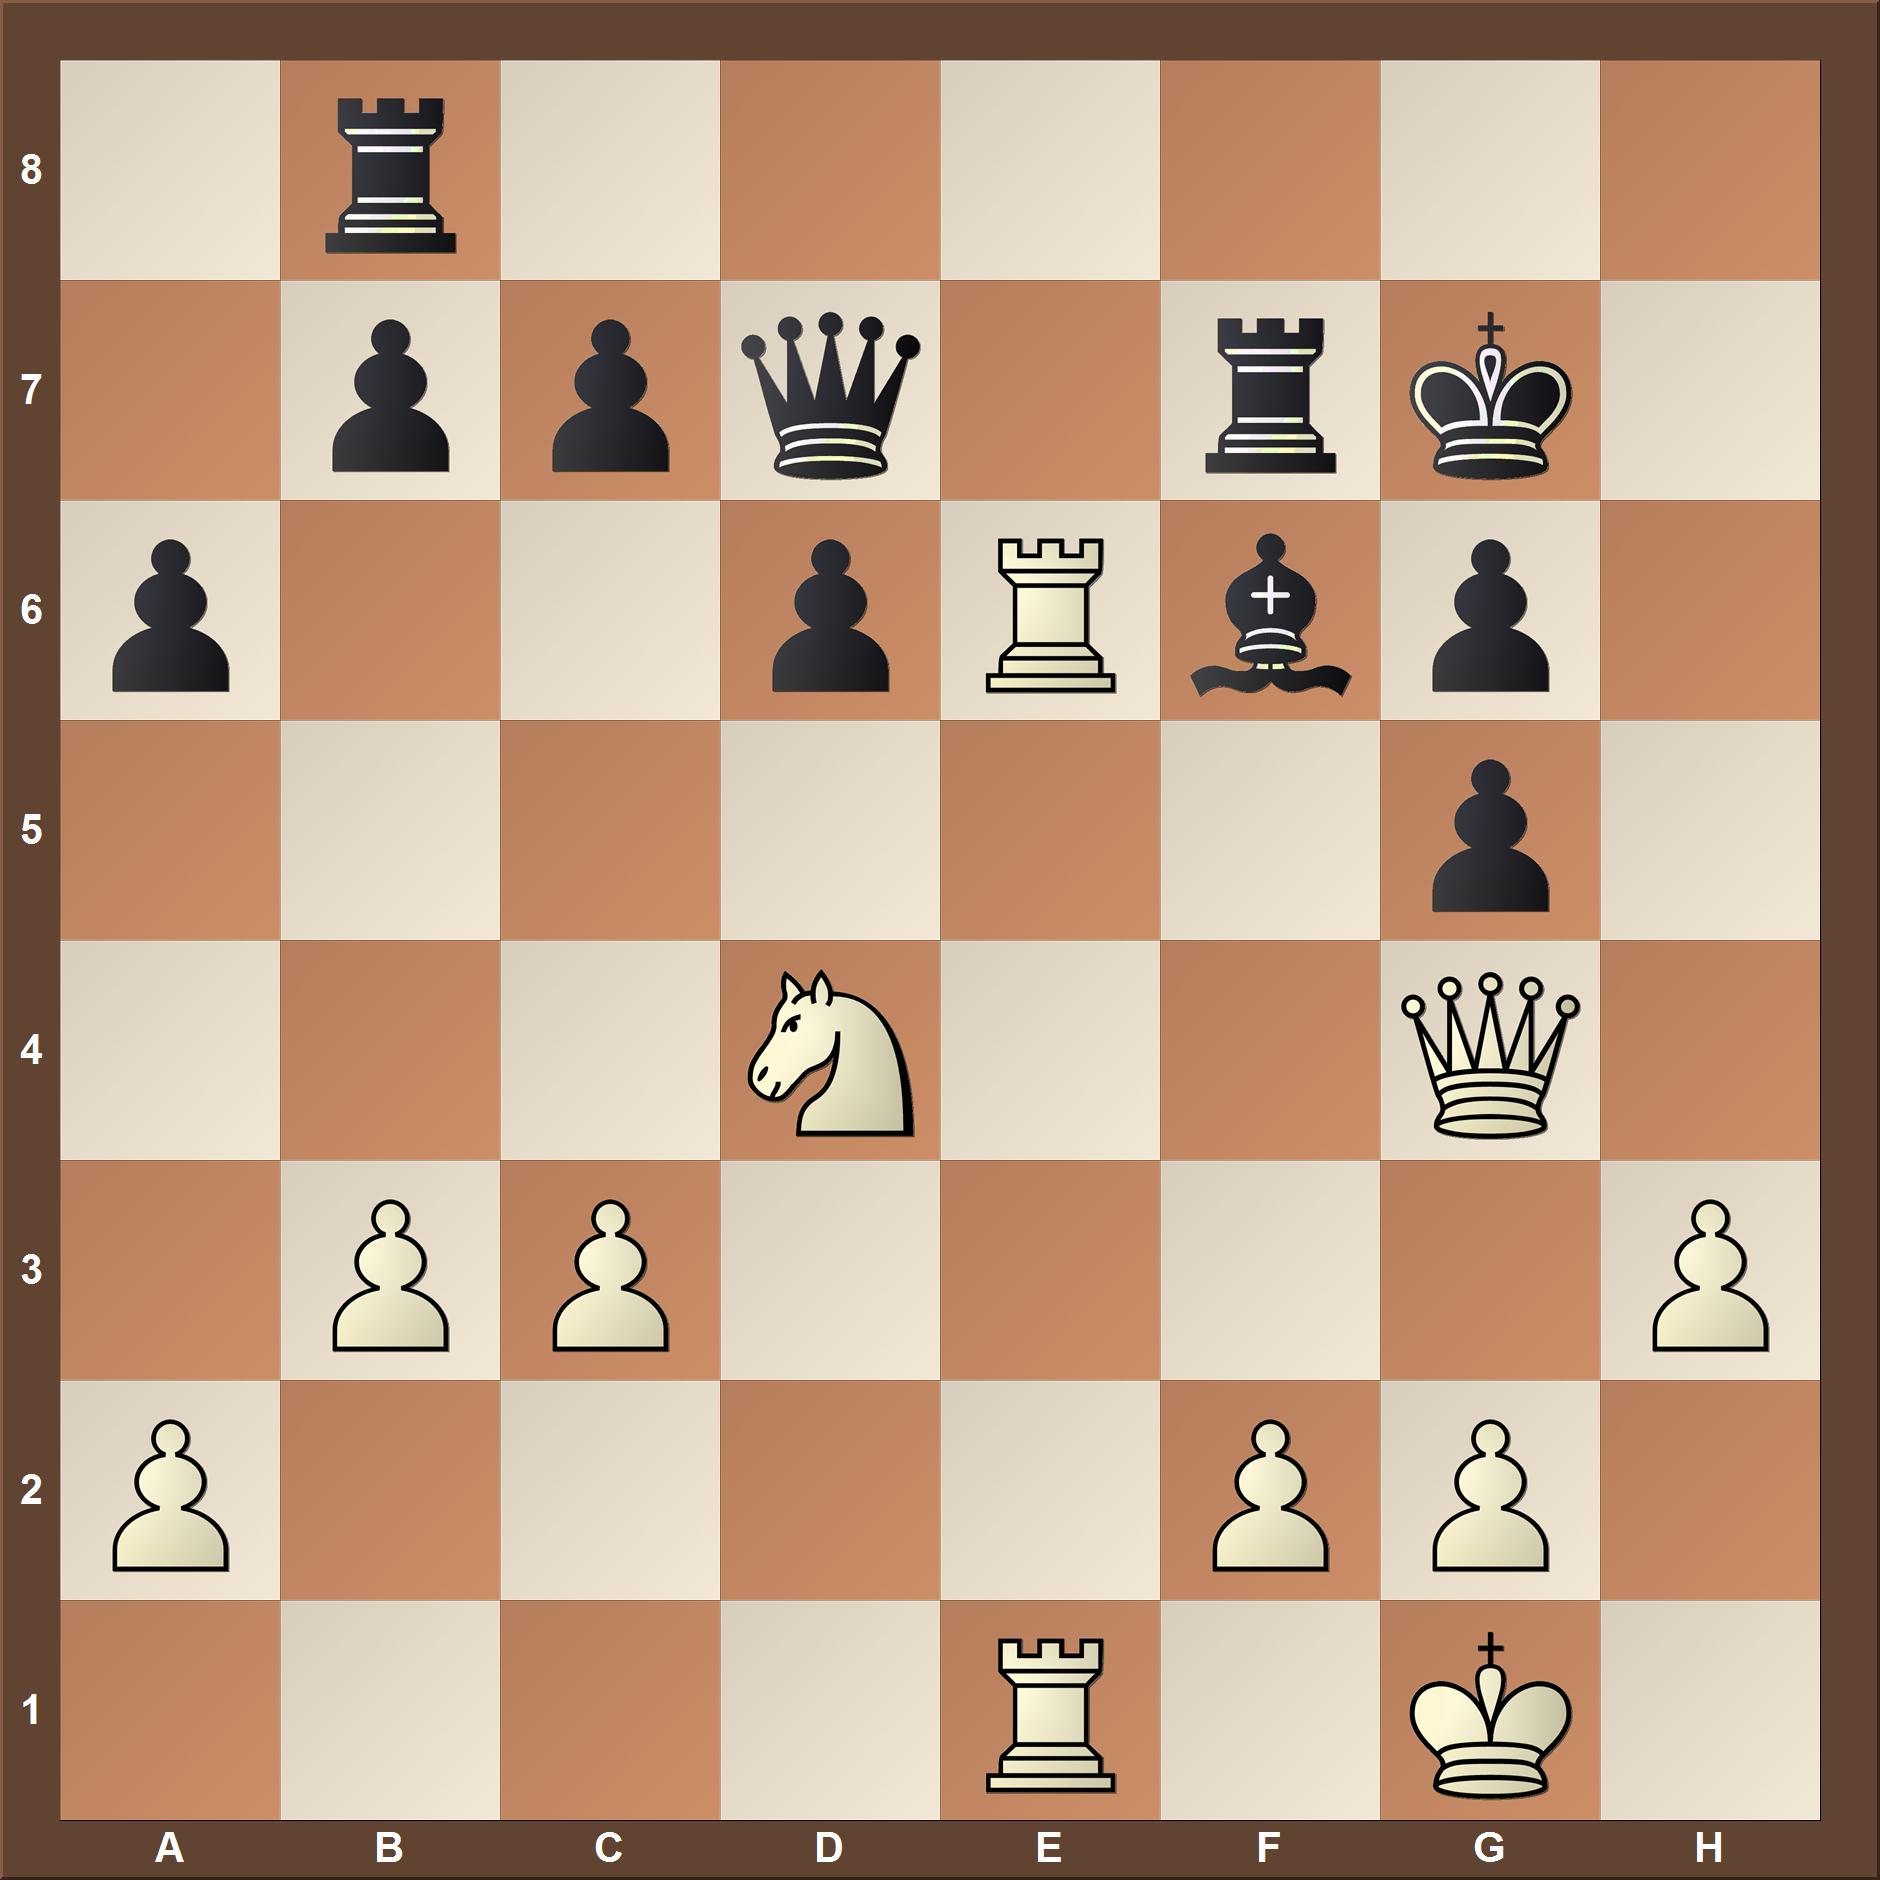 chess tactics 2000-2200 elo